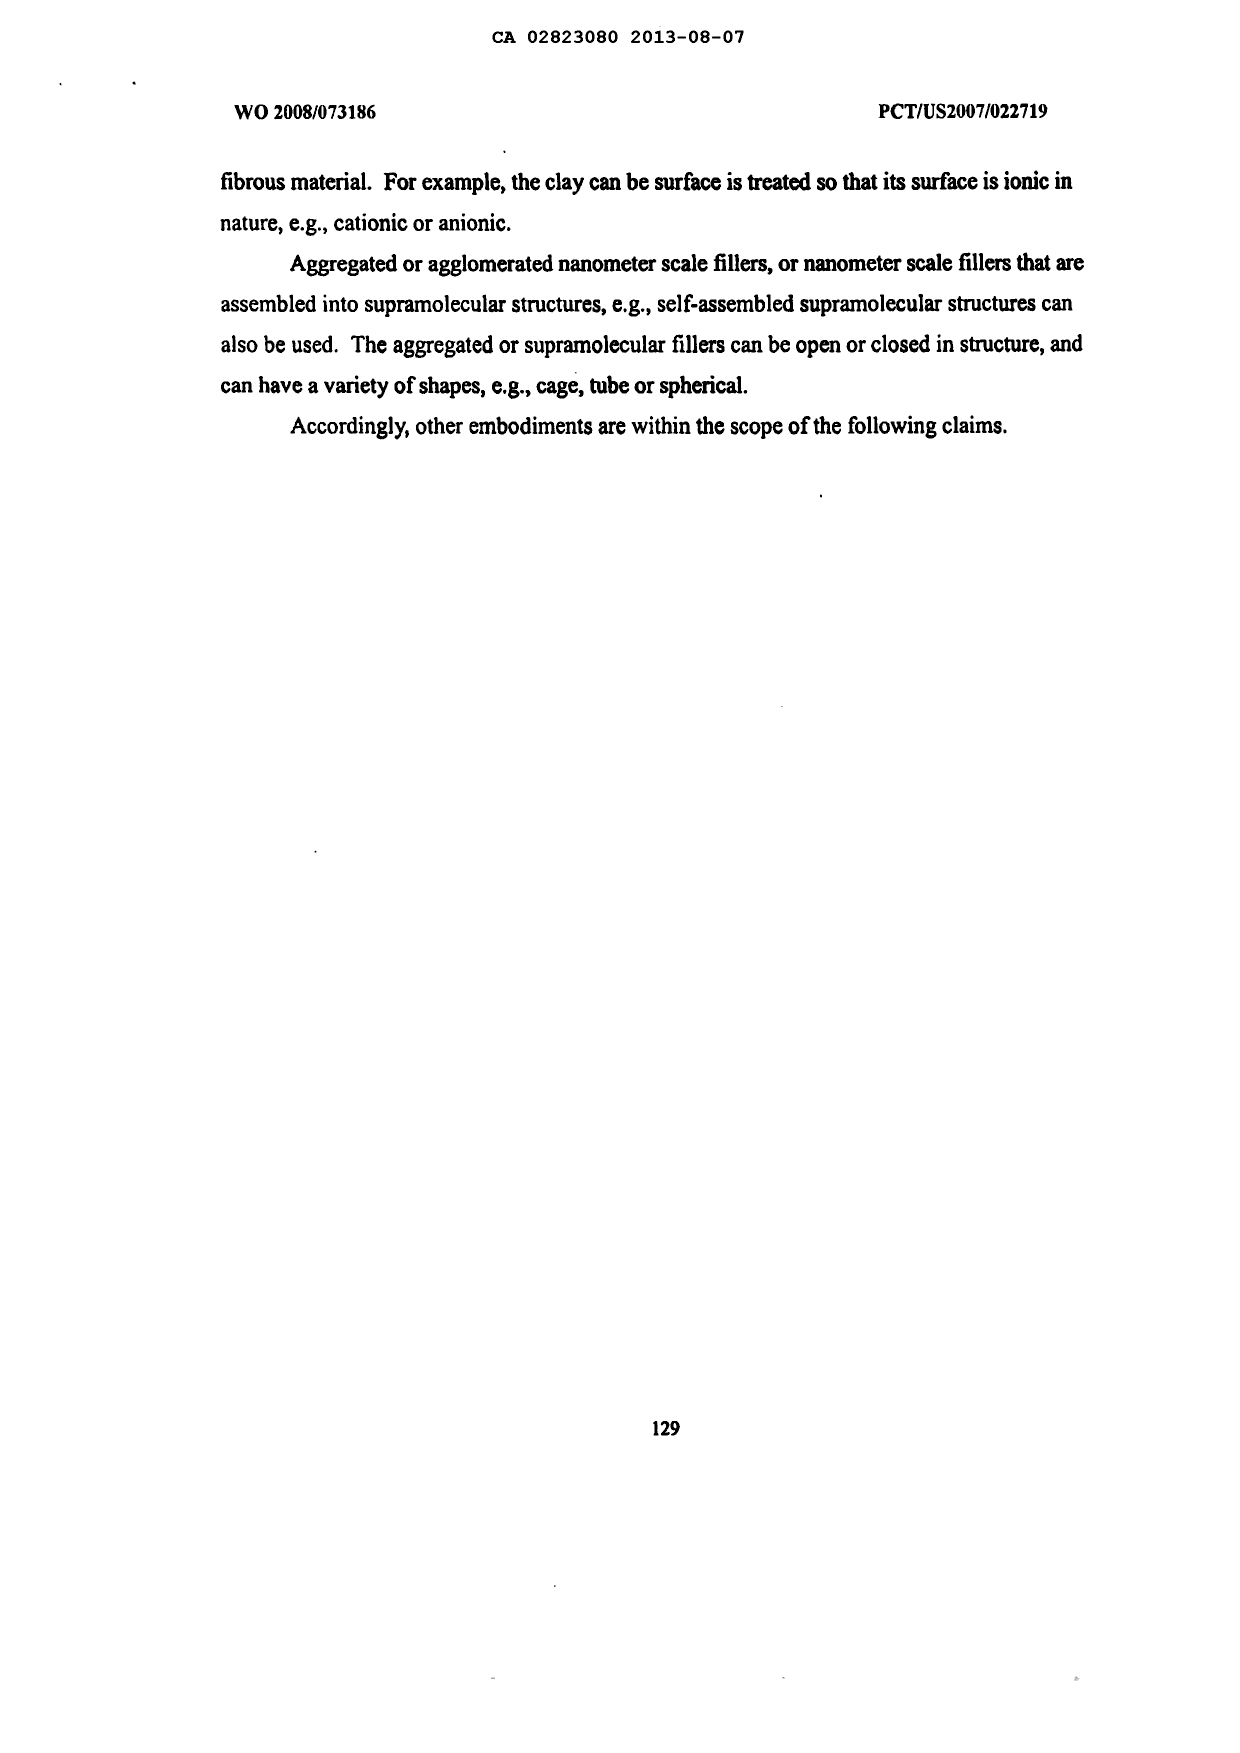 Document de brevet canadien 2823080. Description 20121207. Image 130 de 130